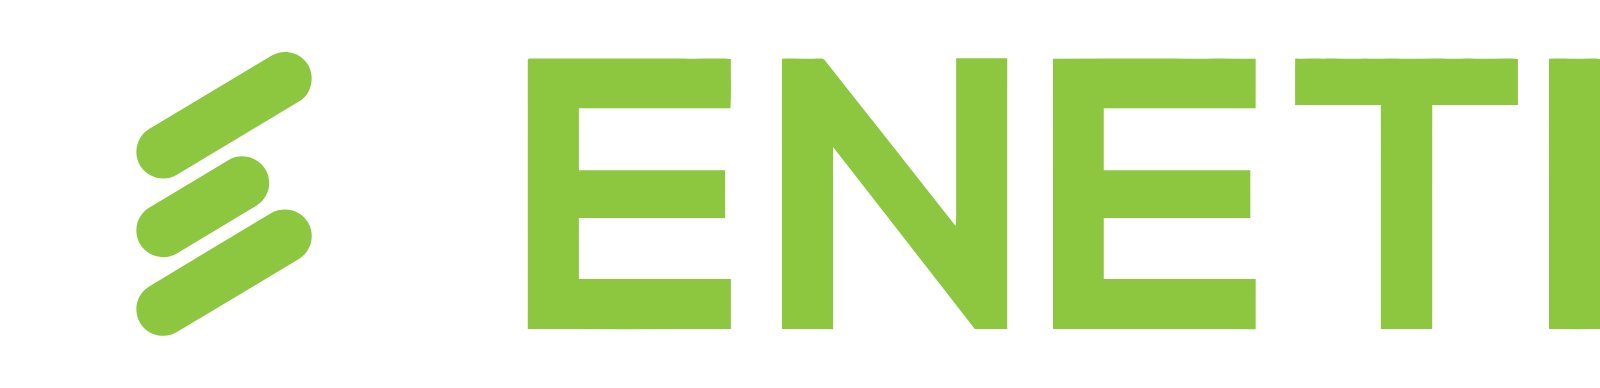 Eneti logo large for dark backgrounds (transparent PNG)